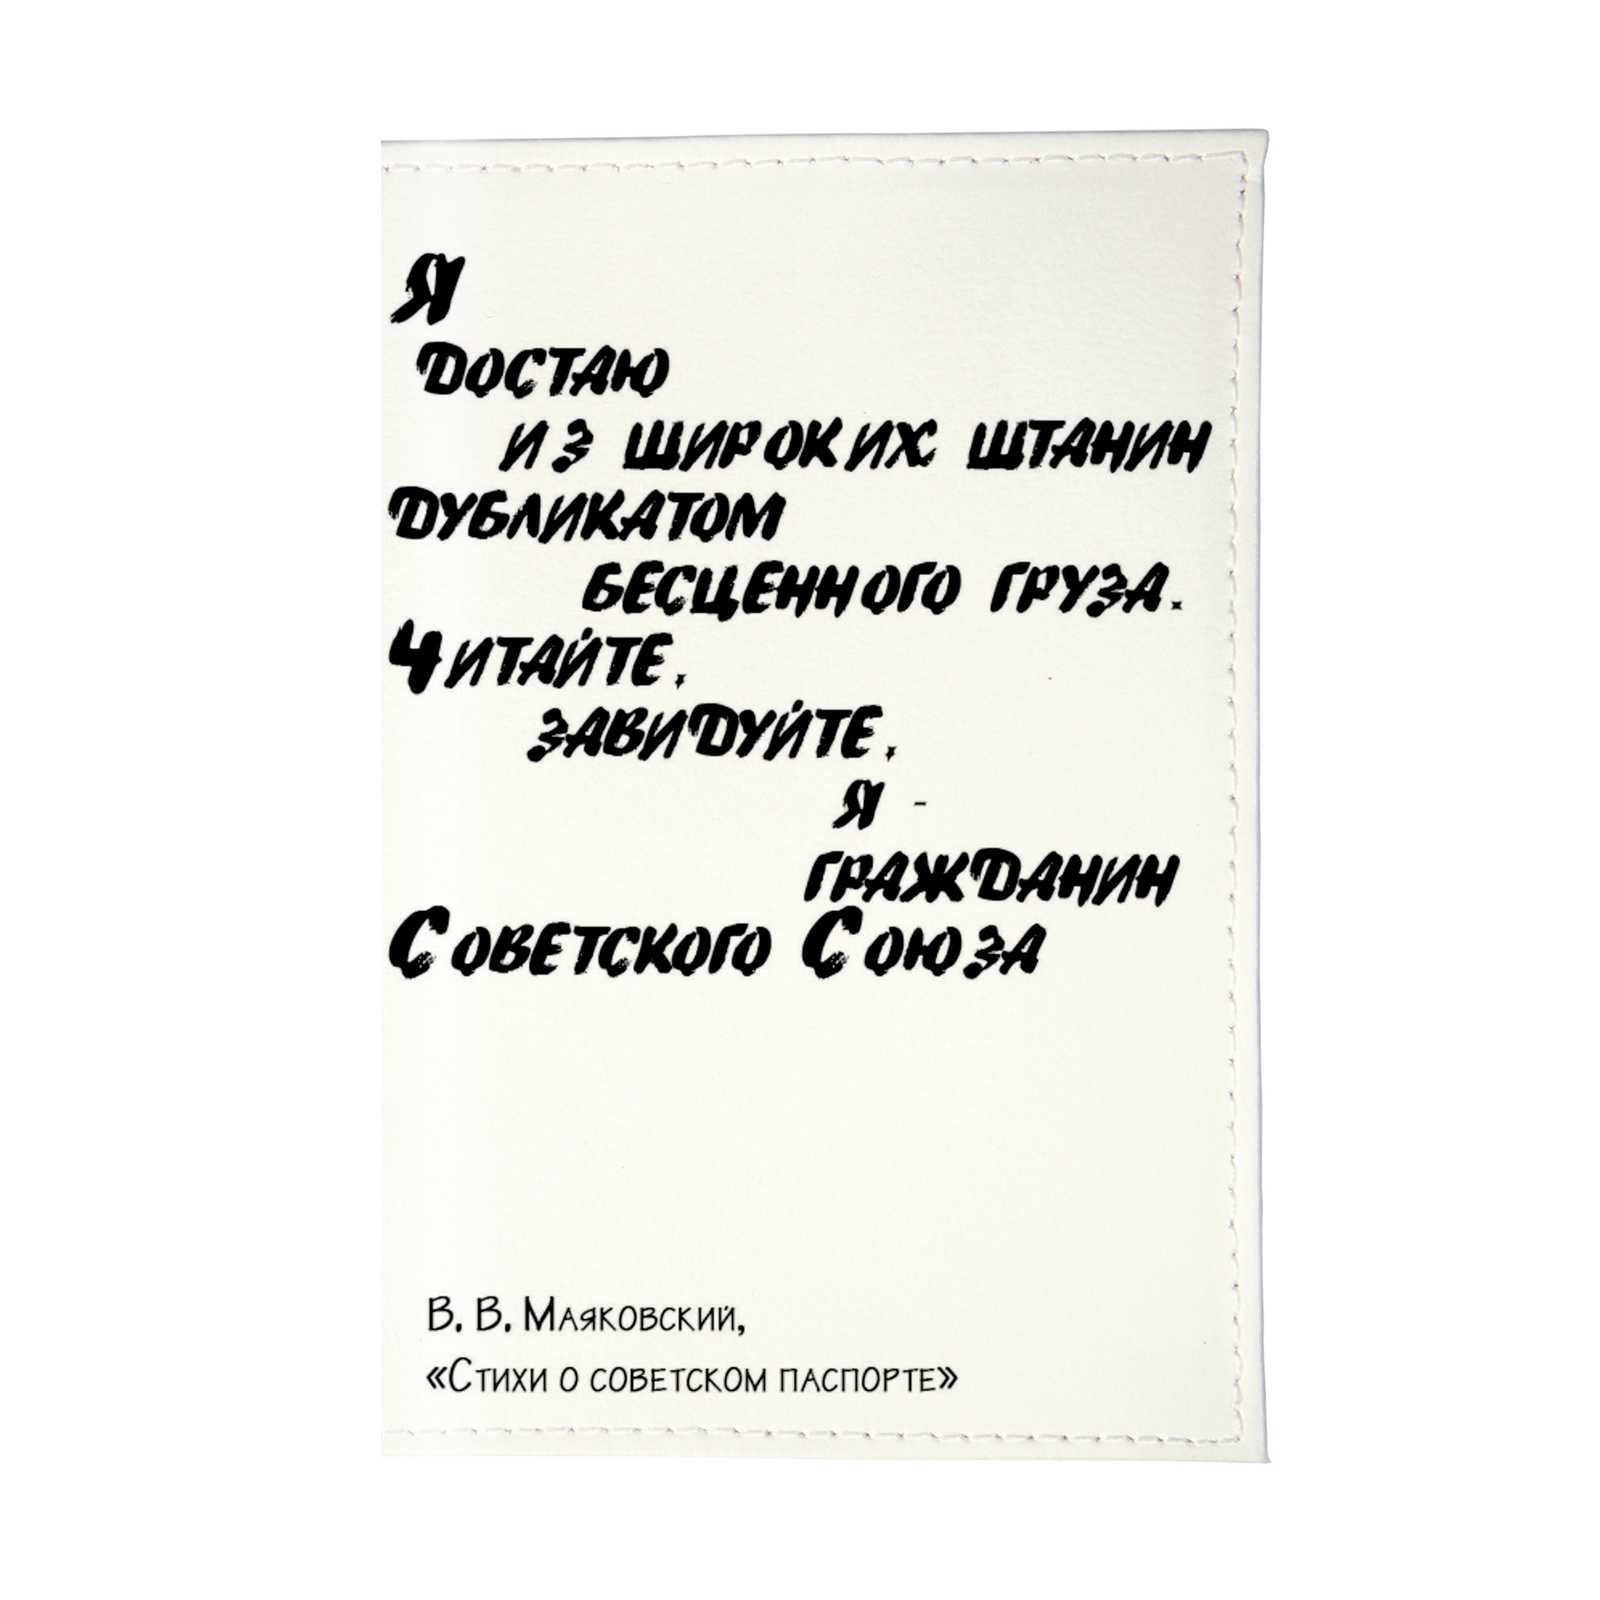 фото Обложка для паспорта Mitya Veselkov OK, белый